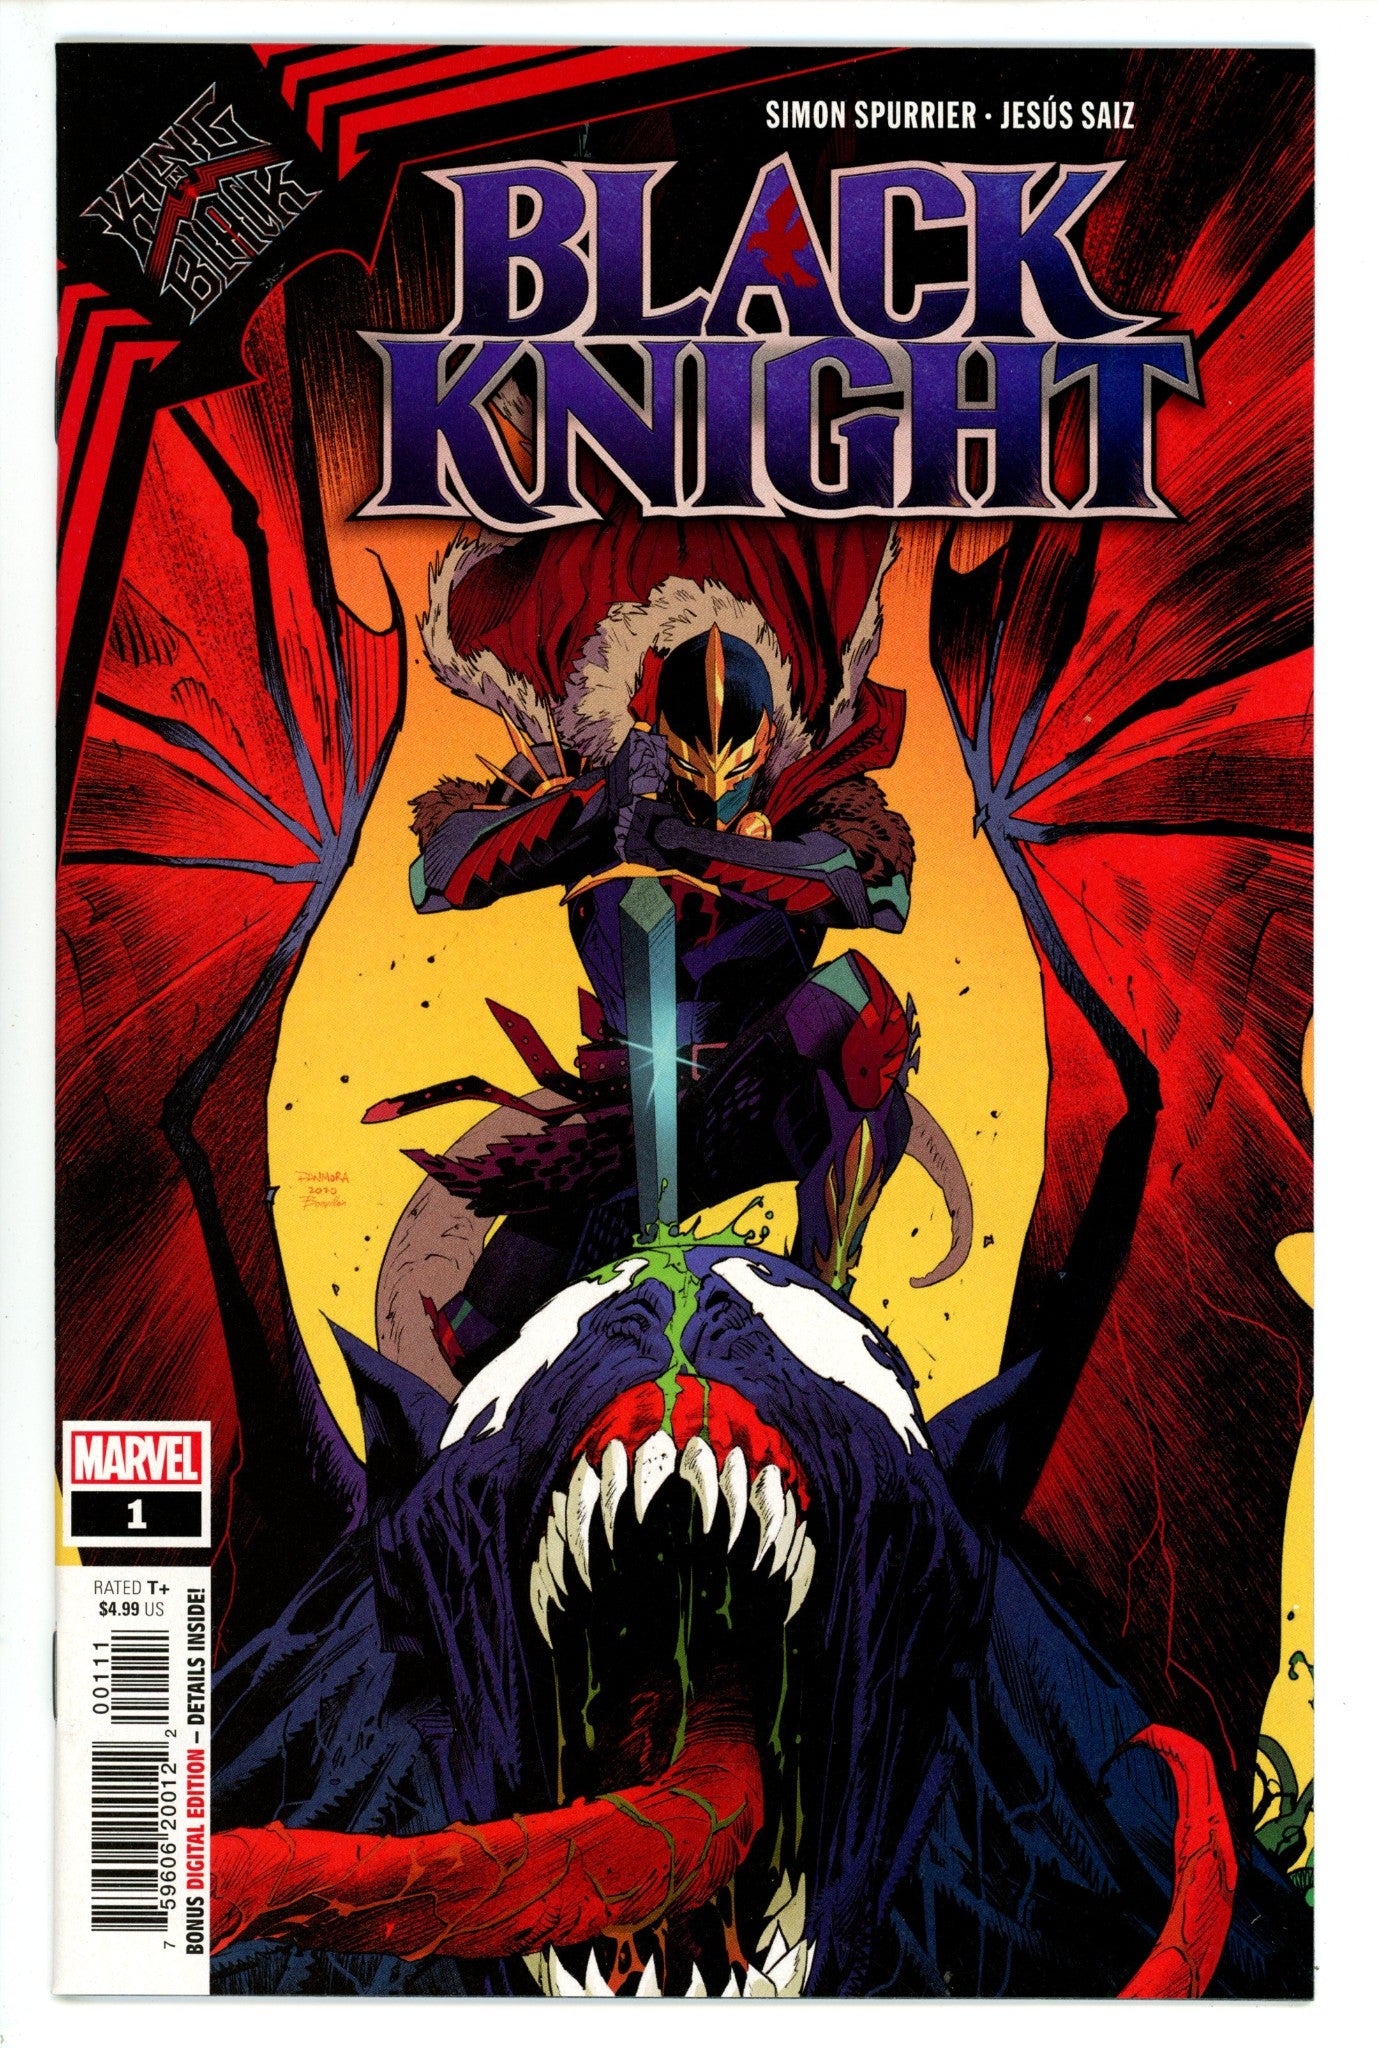 King in Black: Black Knight Vol 4 1 High Grade (2021) 